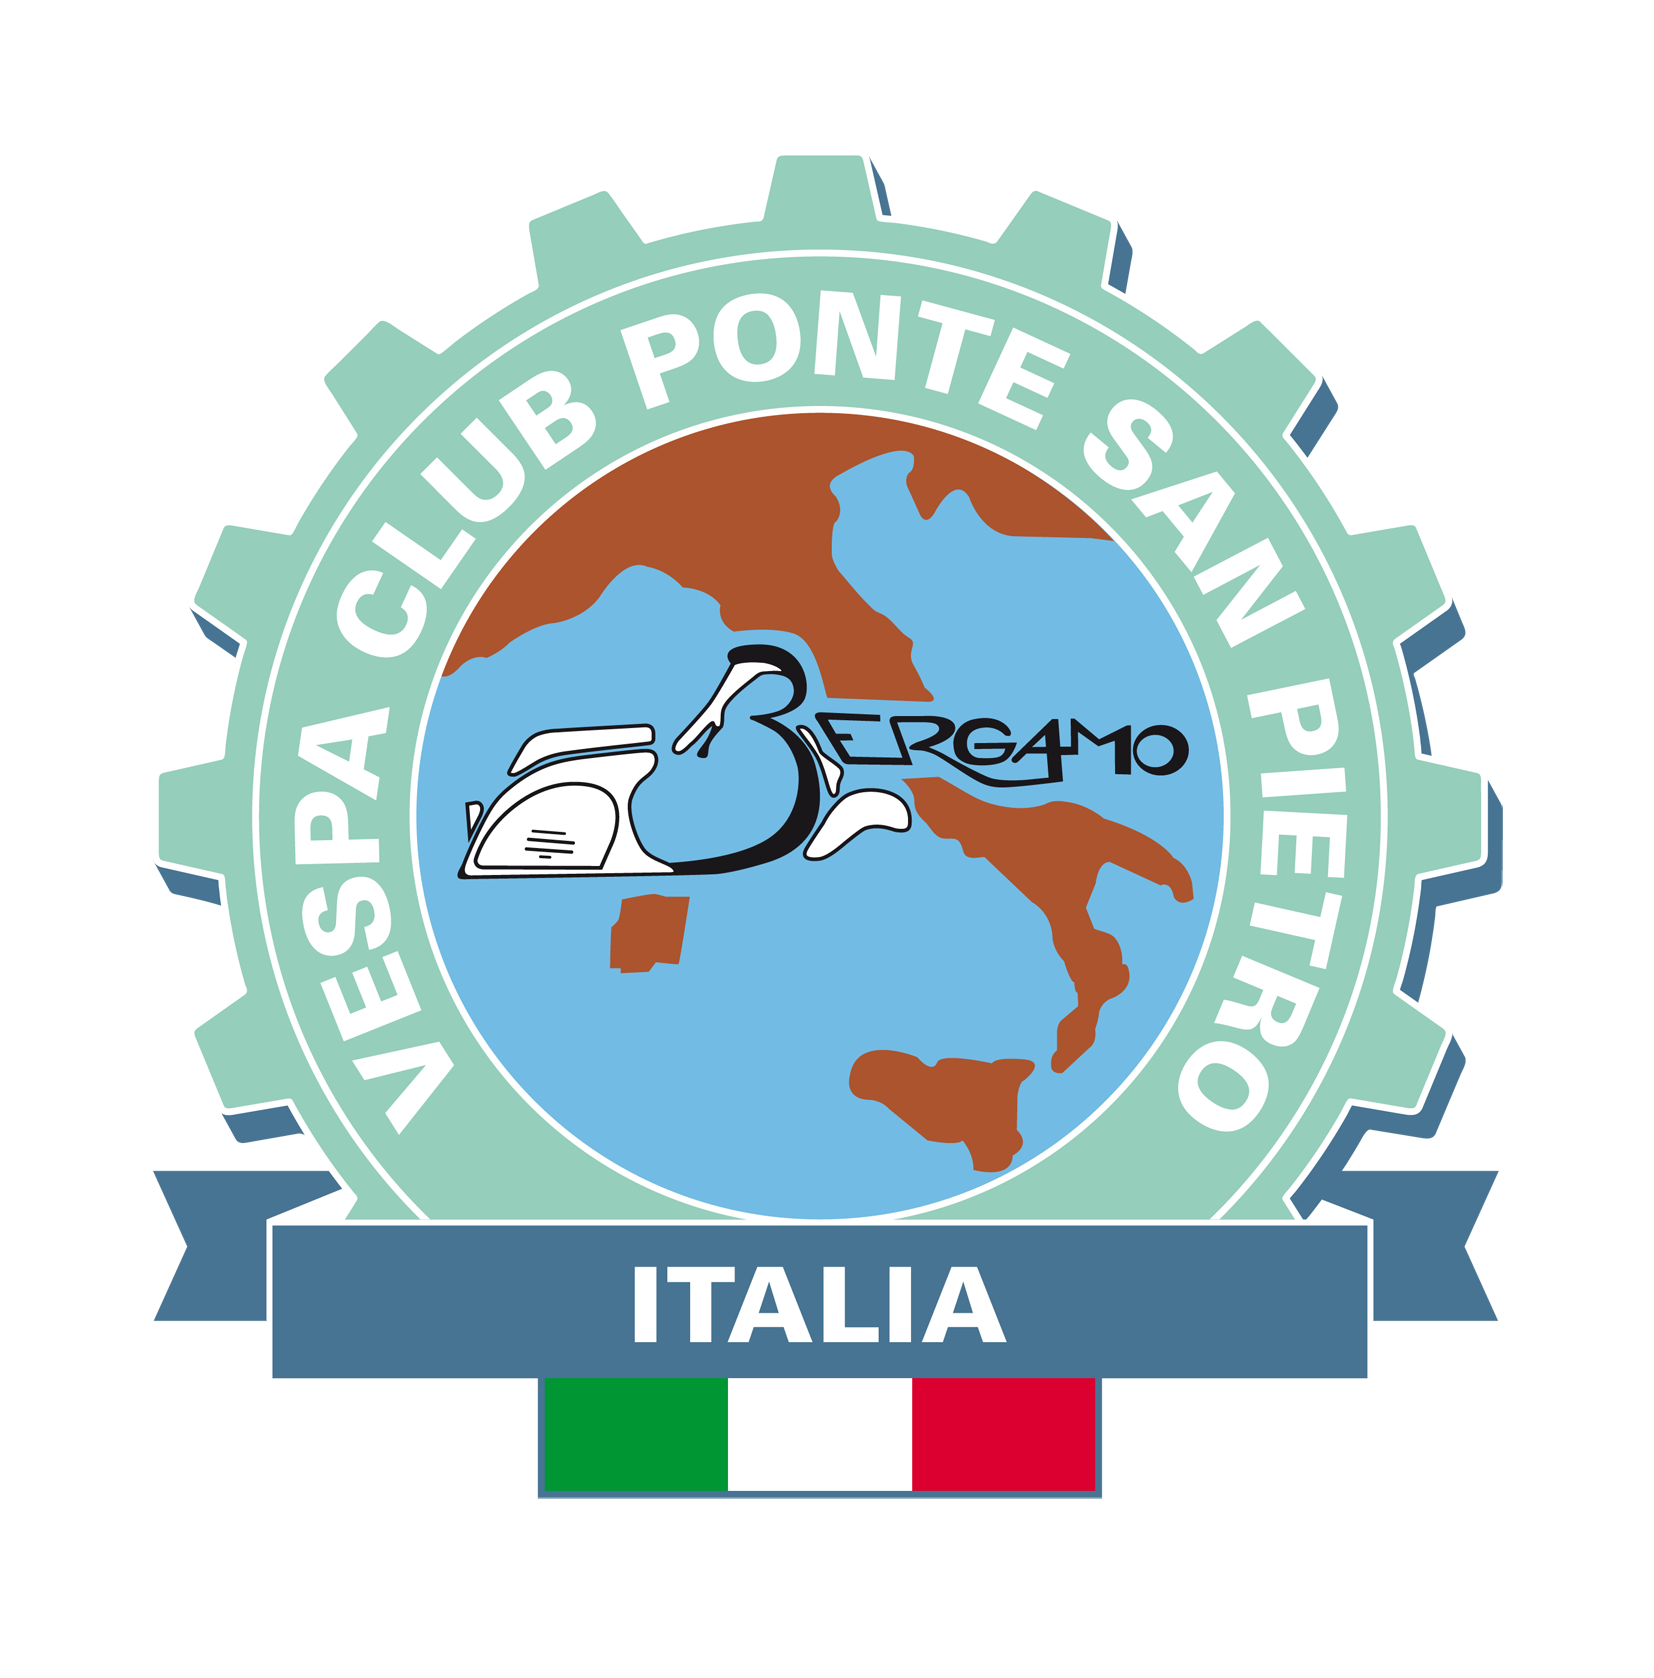 Vespa Club Ponte San Pietro